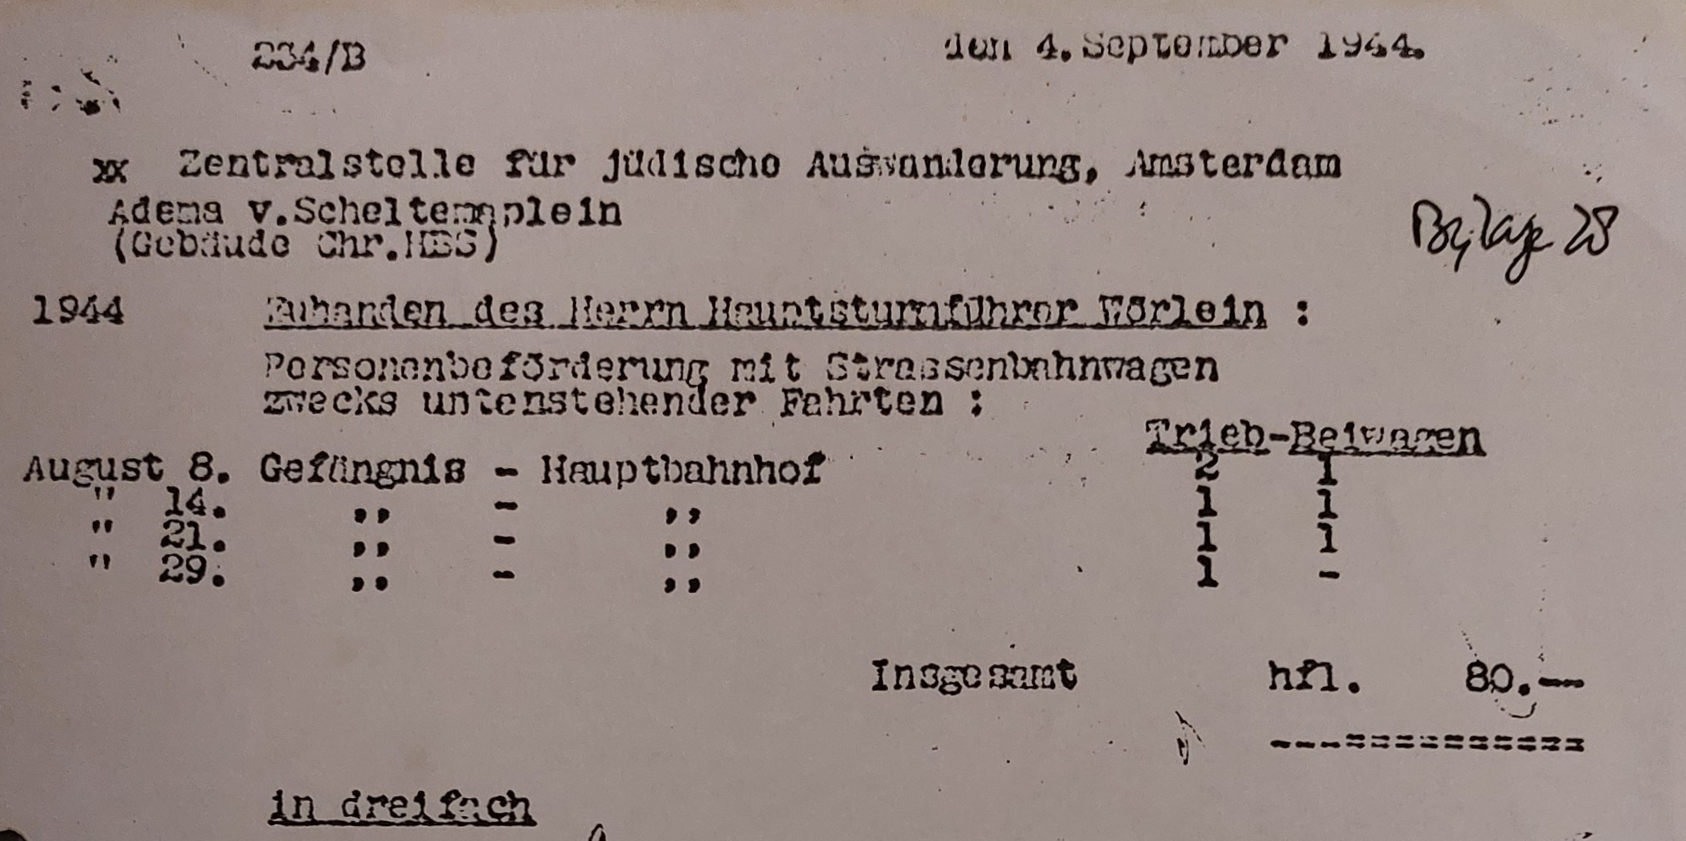 NIOD, archief Dossier Joden - deportatie.